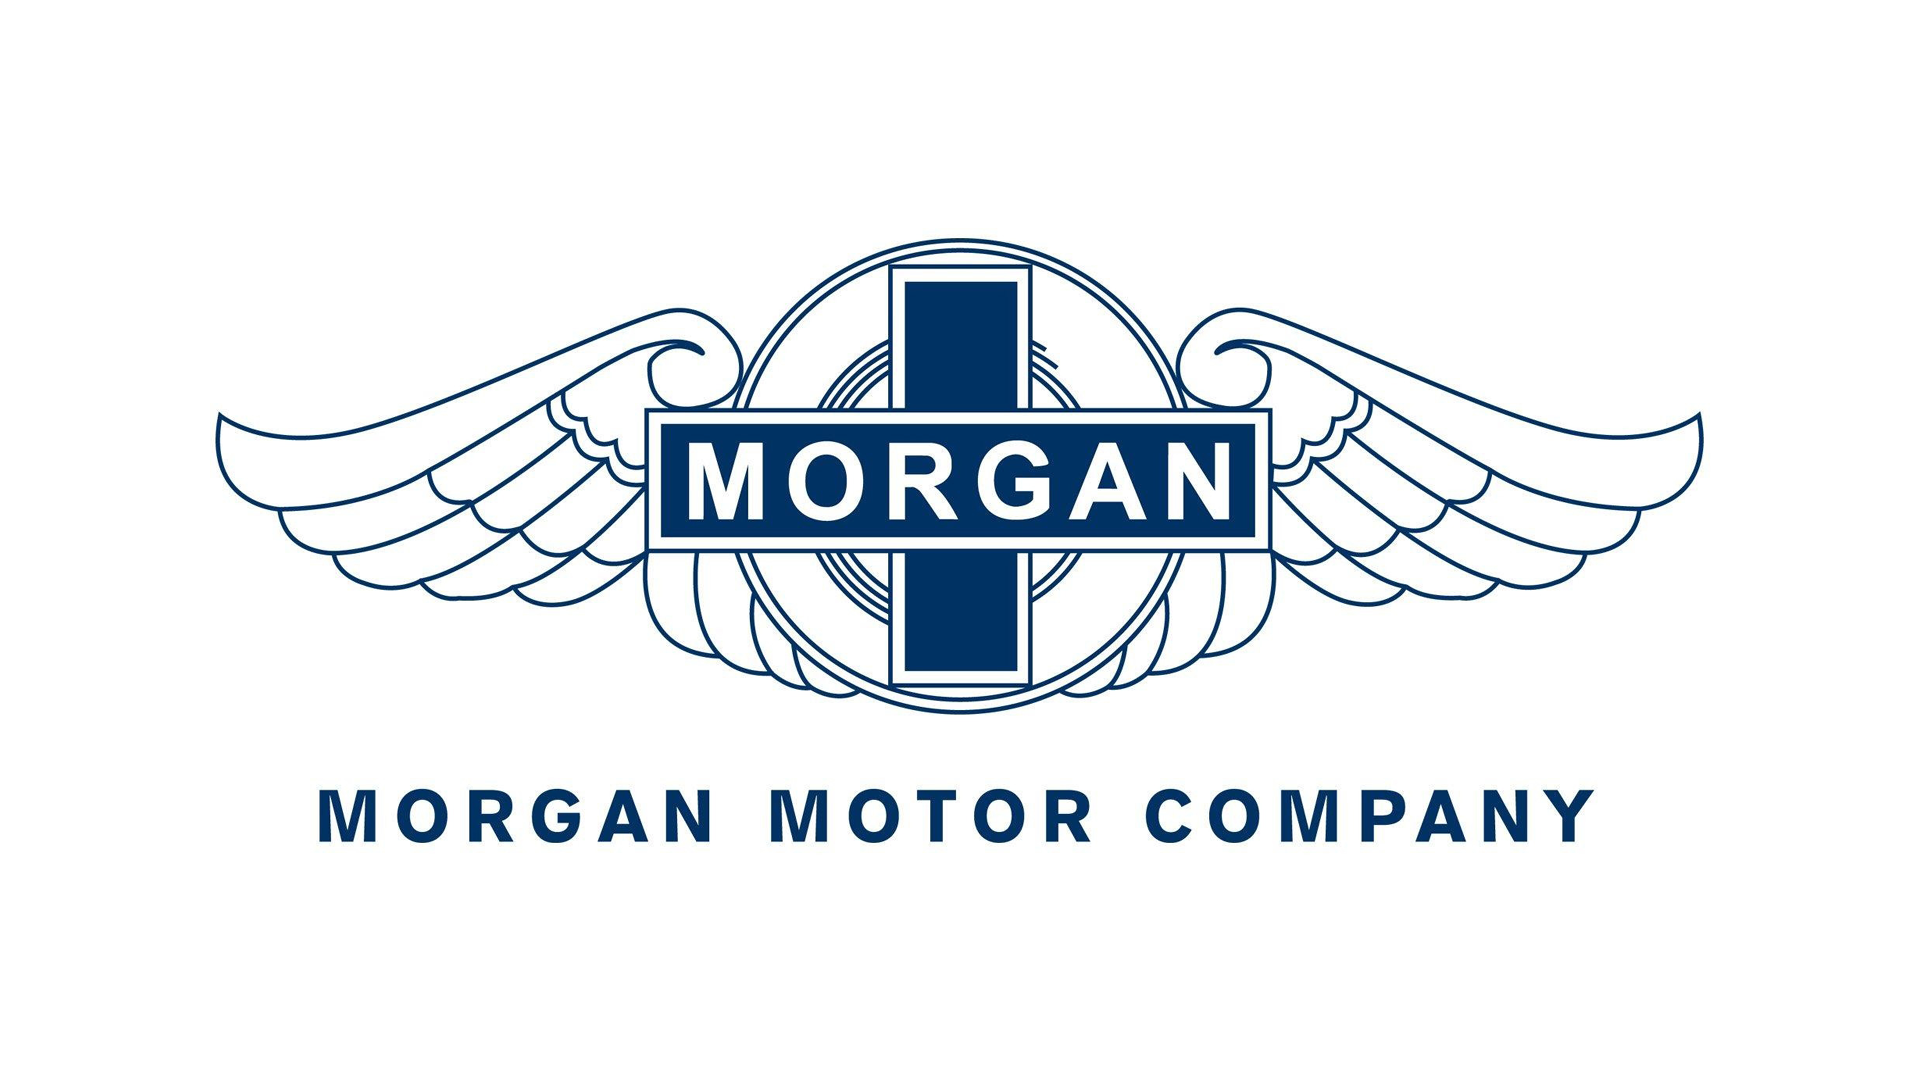 Morgan-logo-blue-1920x1080.png